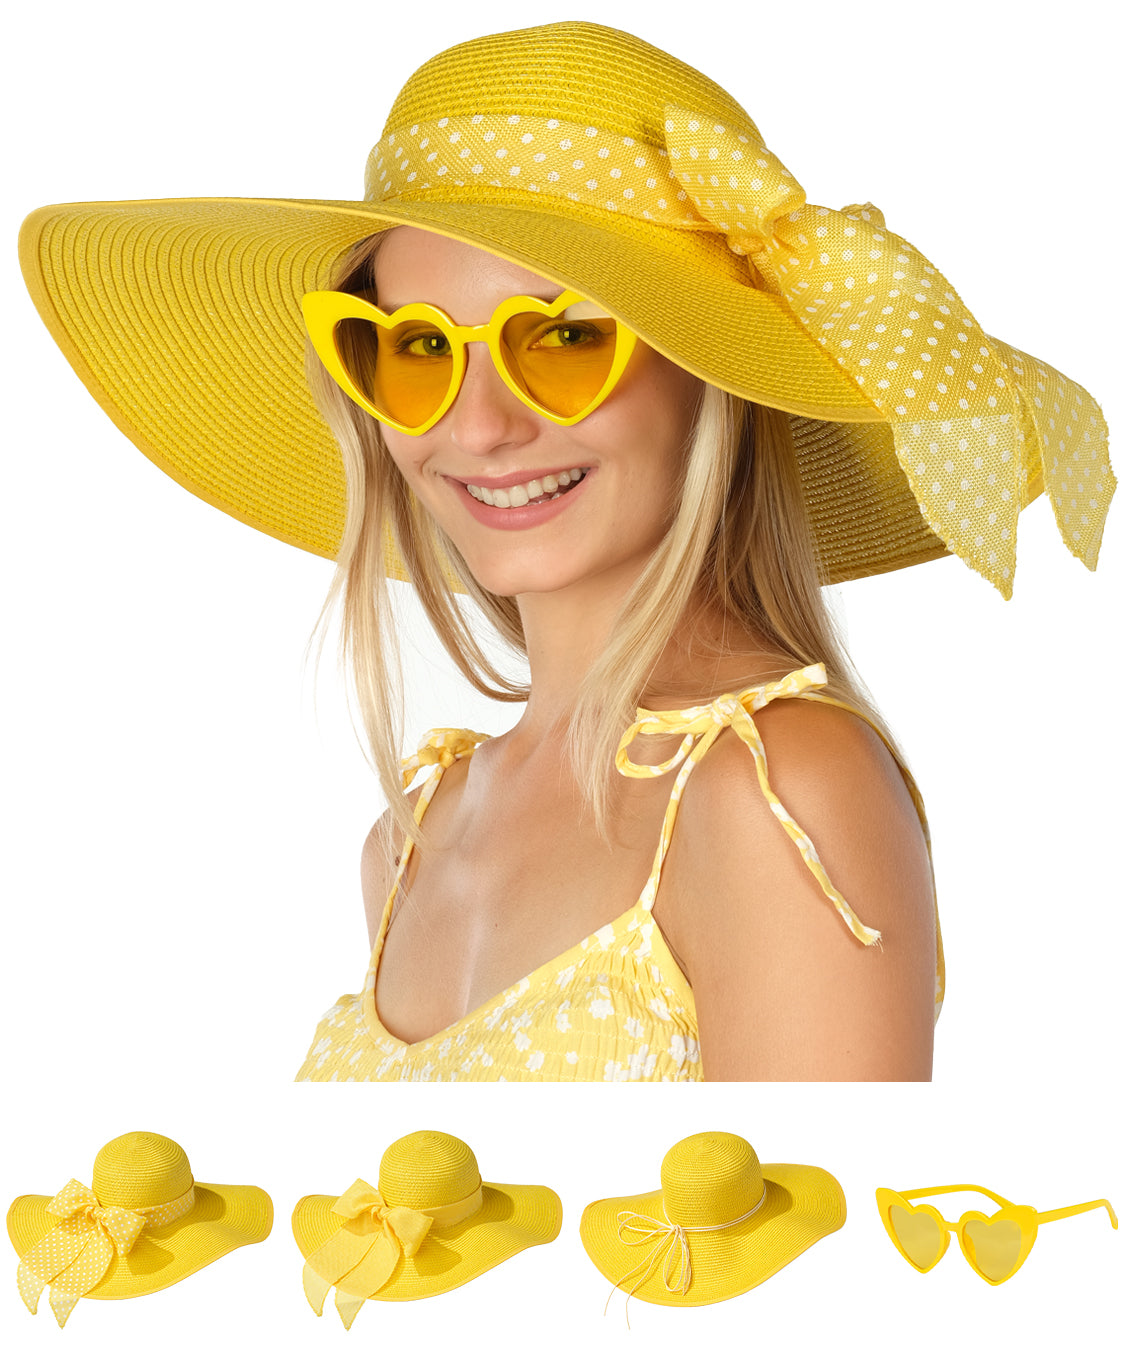 Women's Sun Hats Upf 50+ Beach Hat Wide Brim Straw Hat